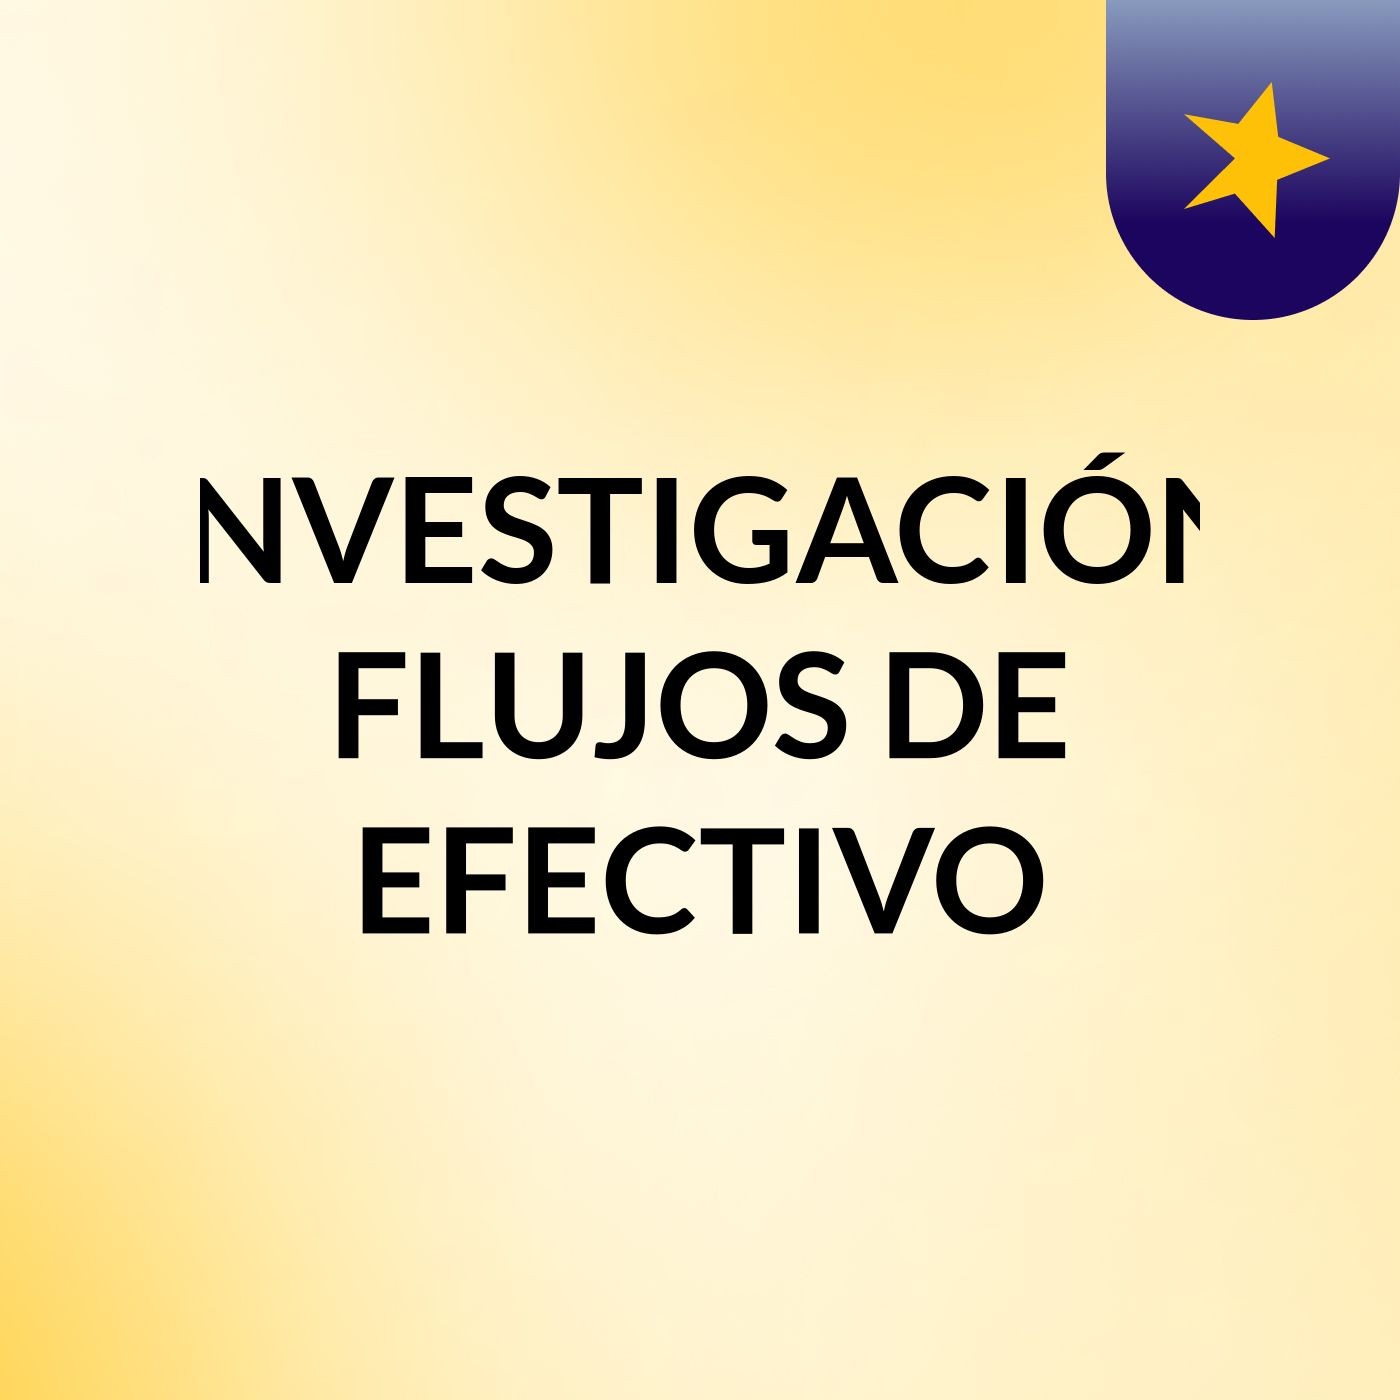 INVESTIGACIÓN: FLUJOS DE EFECTIVO